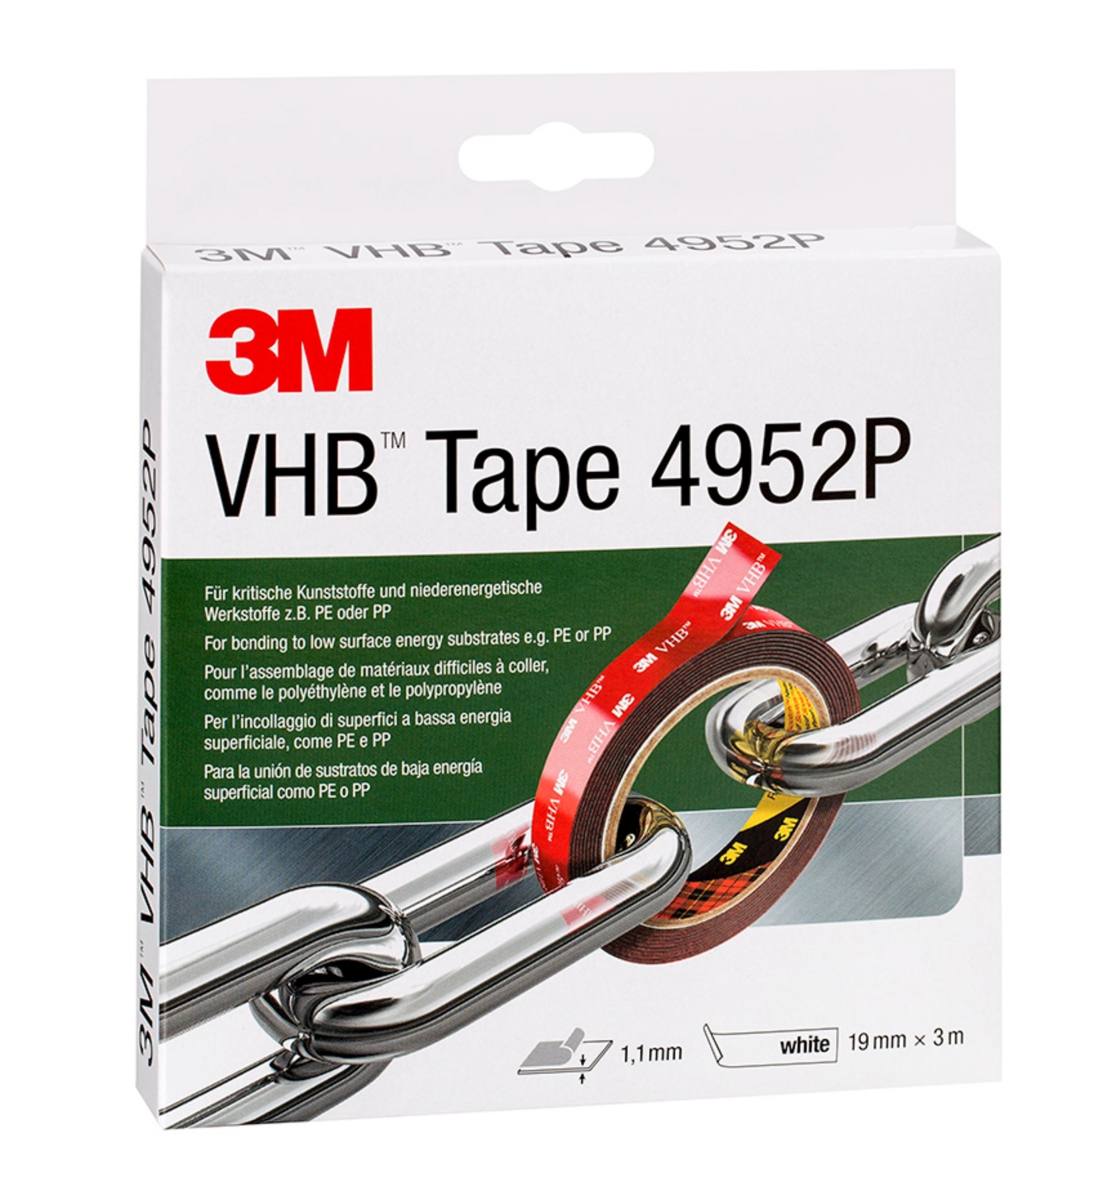 3M VHB adhesive tape 4952P, white, 19 mm x 3 m, 1.1 mm